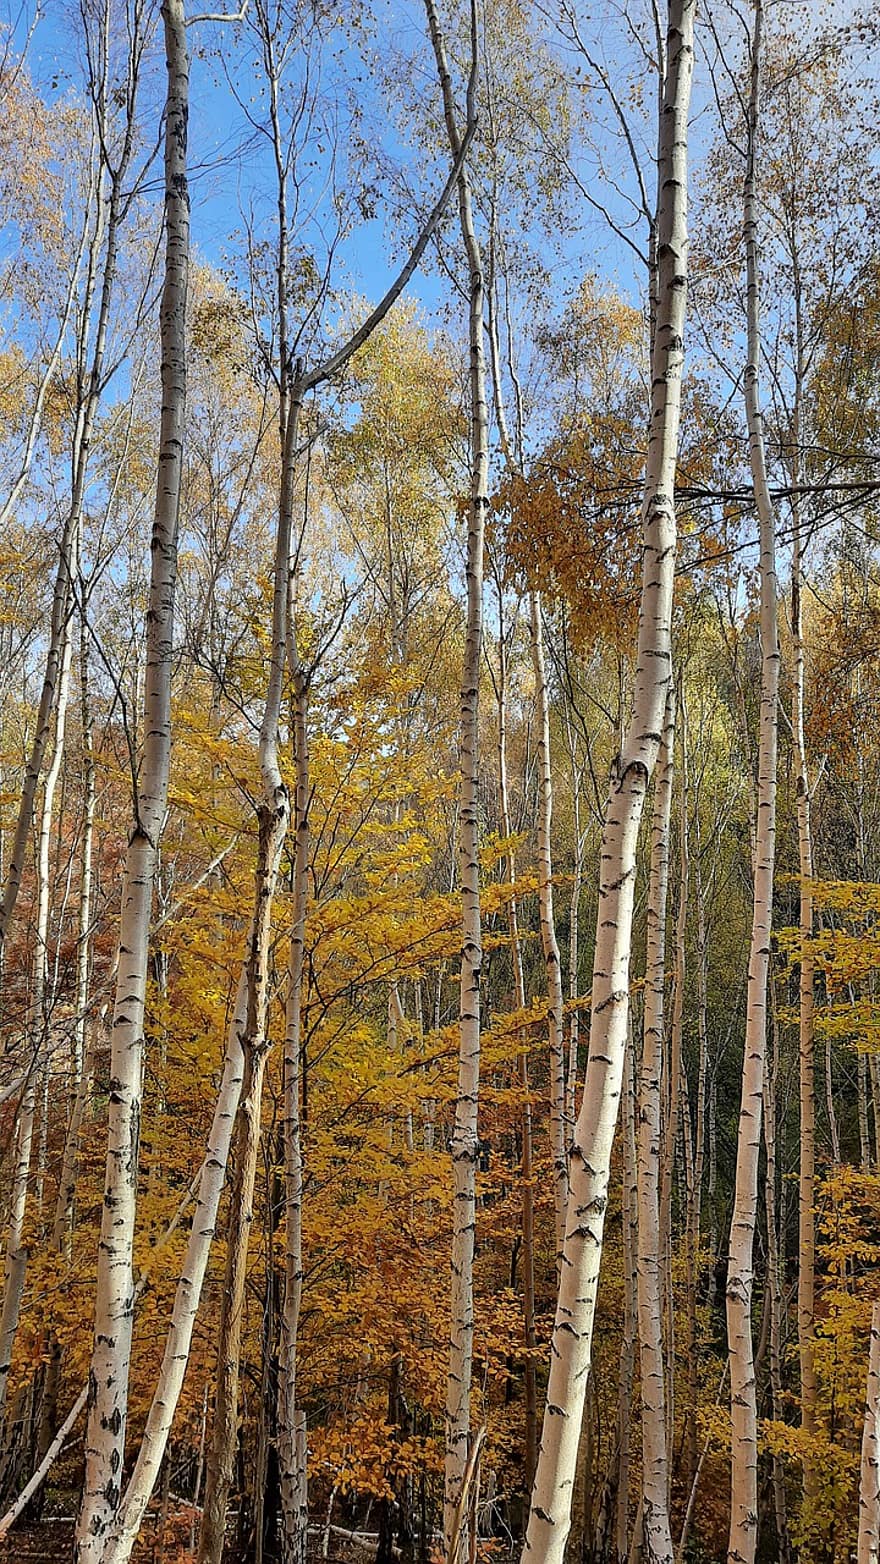 birketræer, birk lund, Skov, efterår, træer, natur, birk, hvidt træ, træstammer, træ, gul